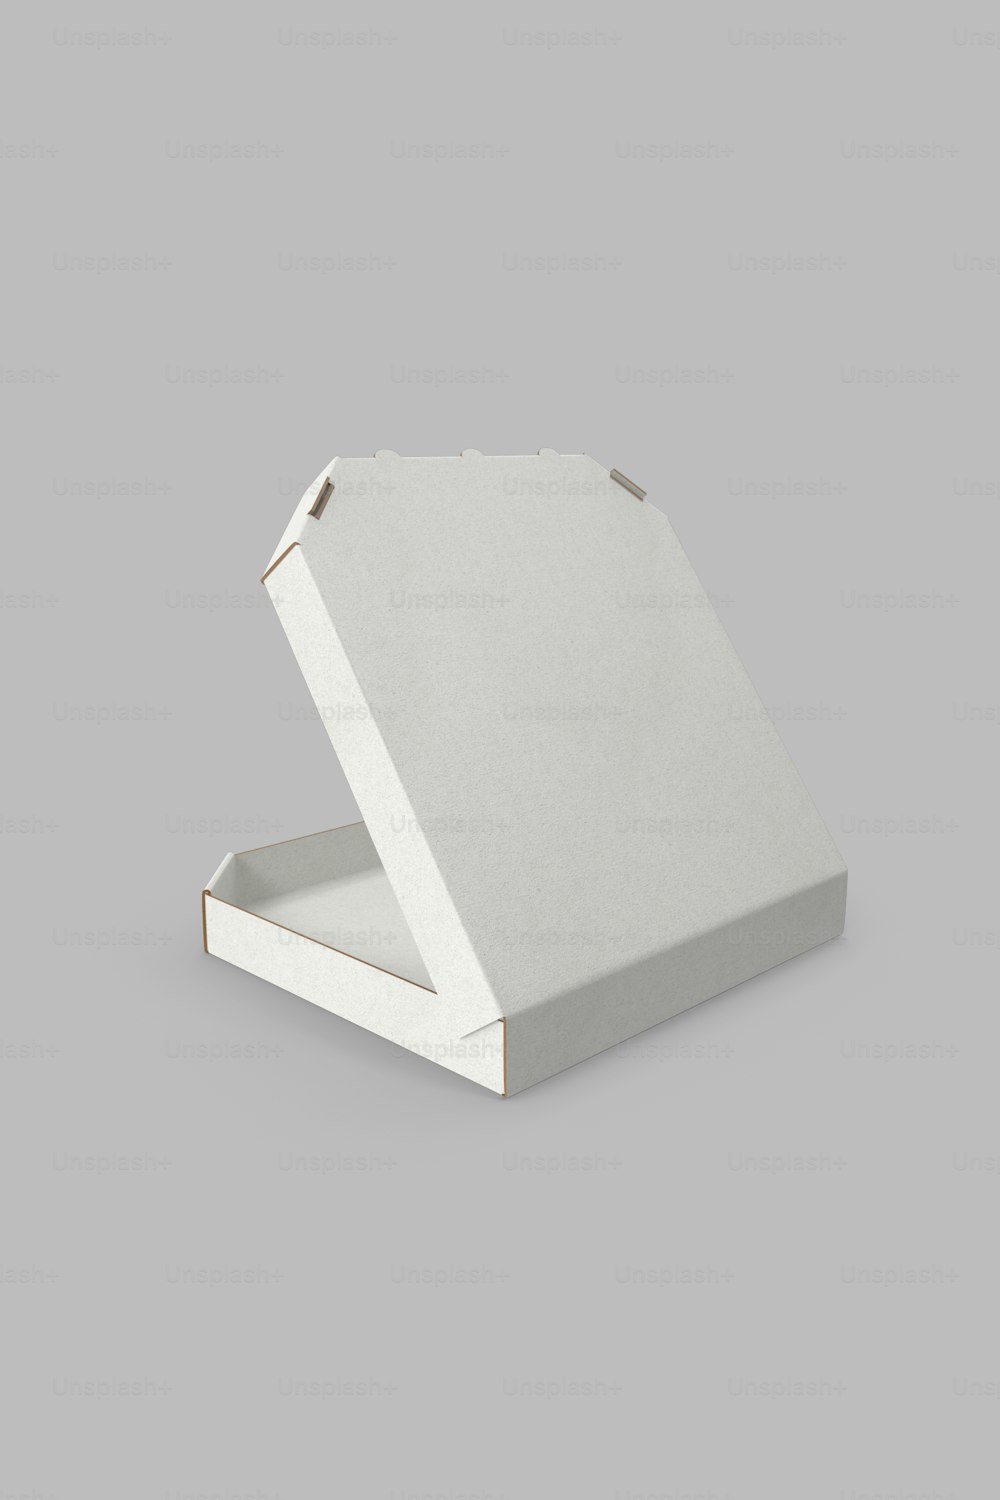 uma caixa branca com uma tampa fechada em um fundo cinza